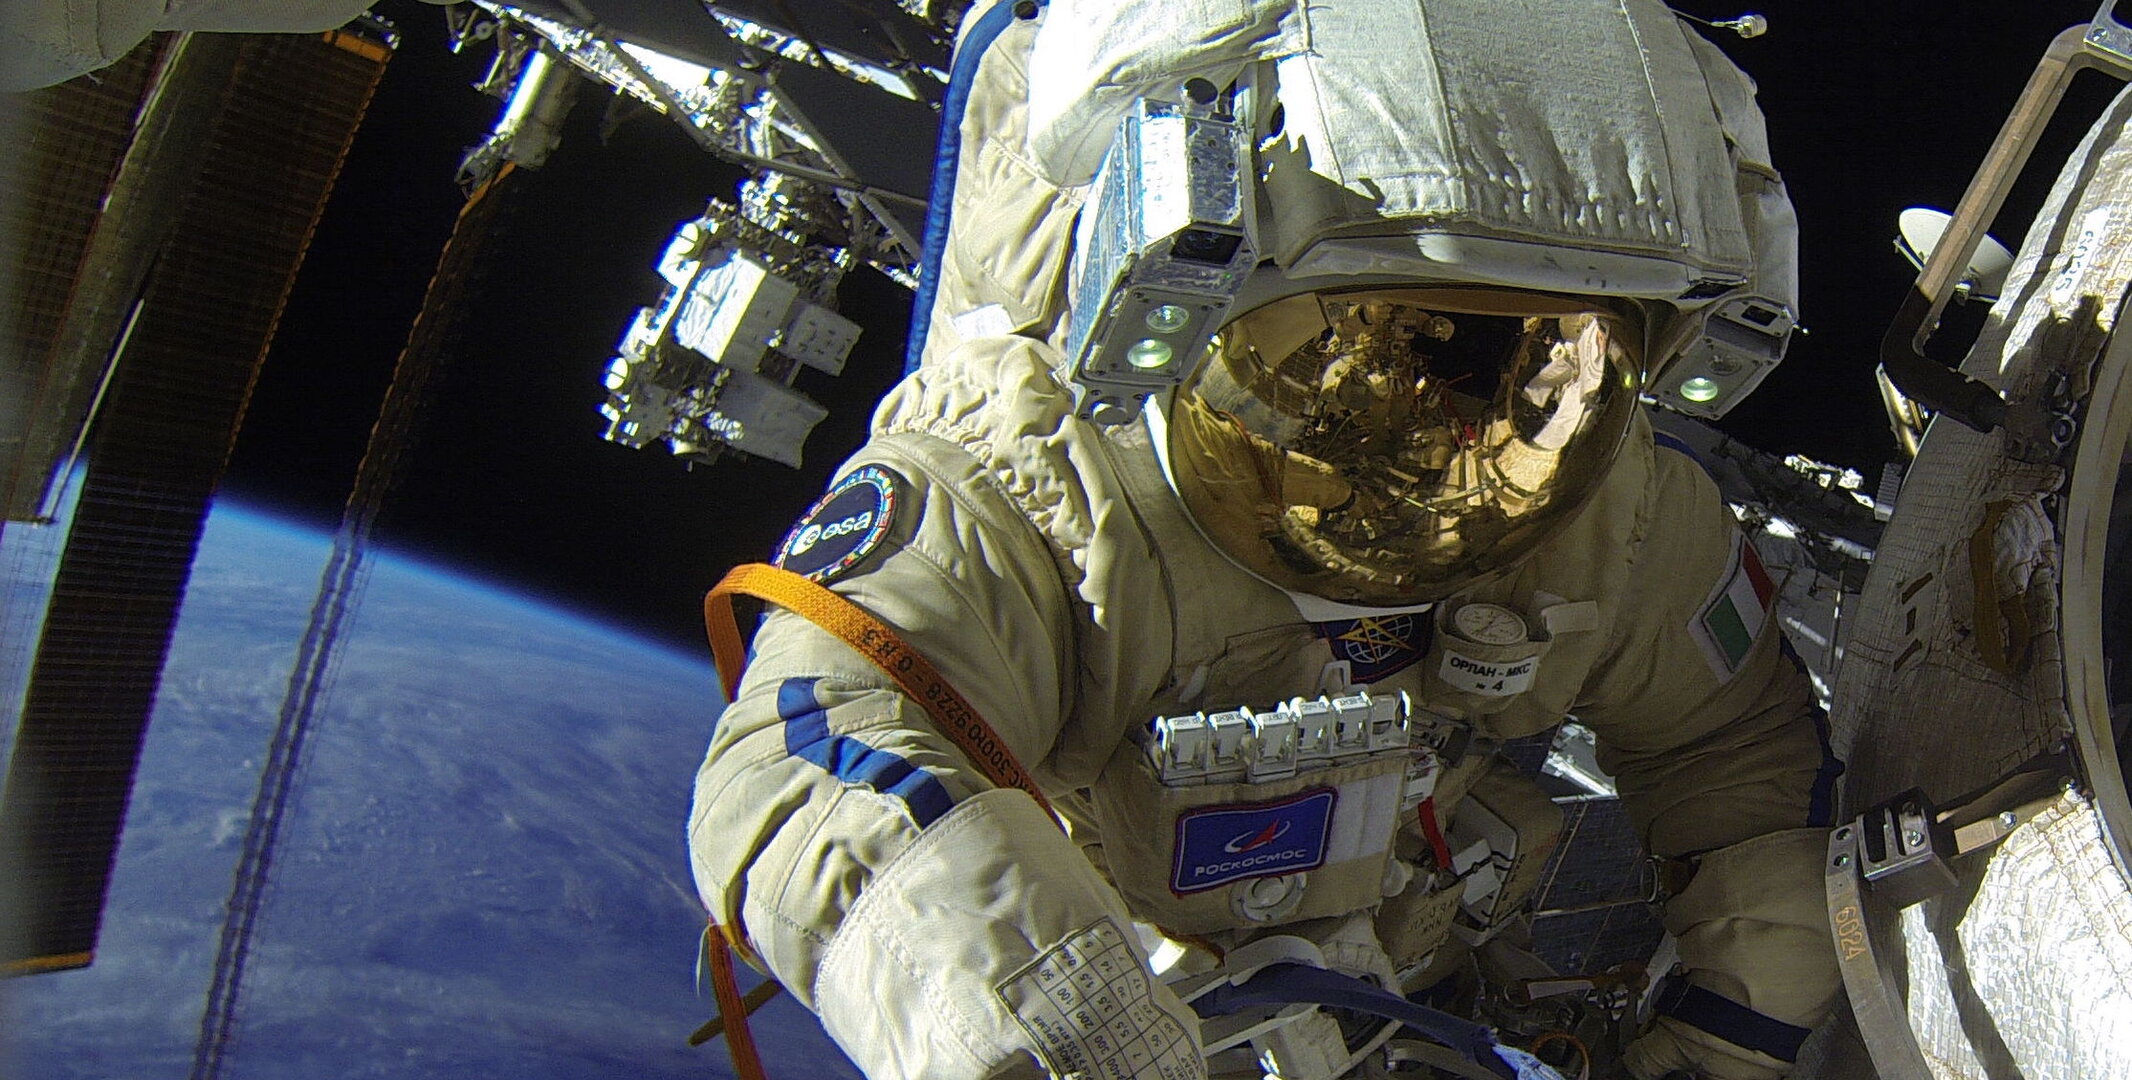 Parche - Viaje al espacio - Astronauta - azul-blanco - parche, 3,95 €